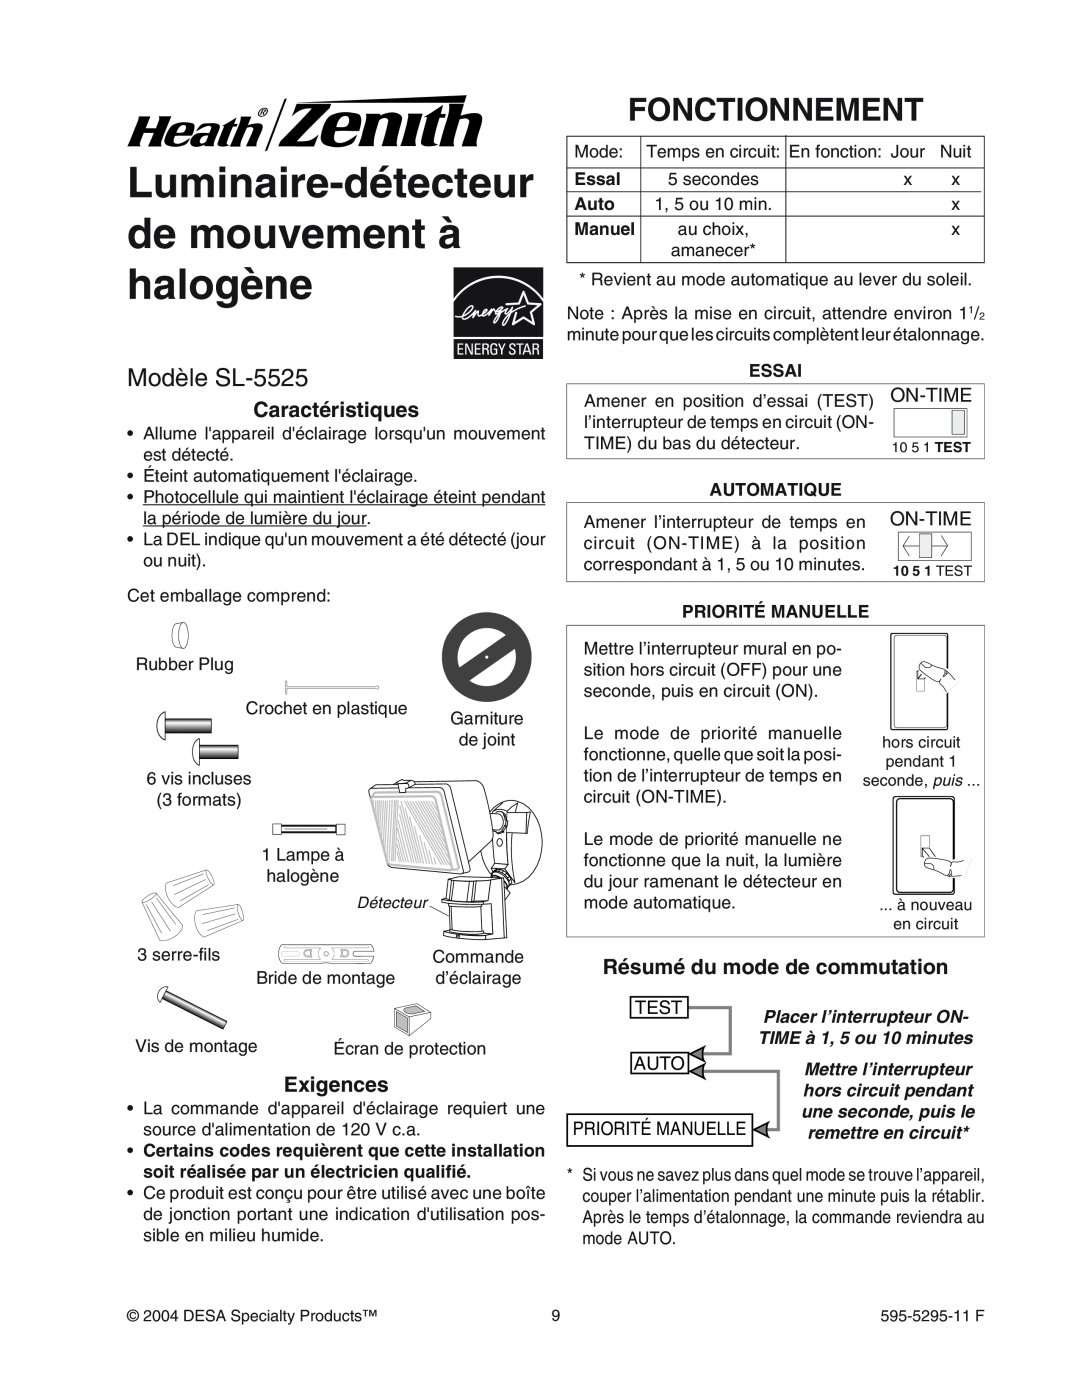 Heath Zenith Luminaire-détecteurde mouvement à halogène, Fonctionnement, Mod le SL-5525, Caractéristiques, Exigences 